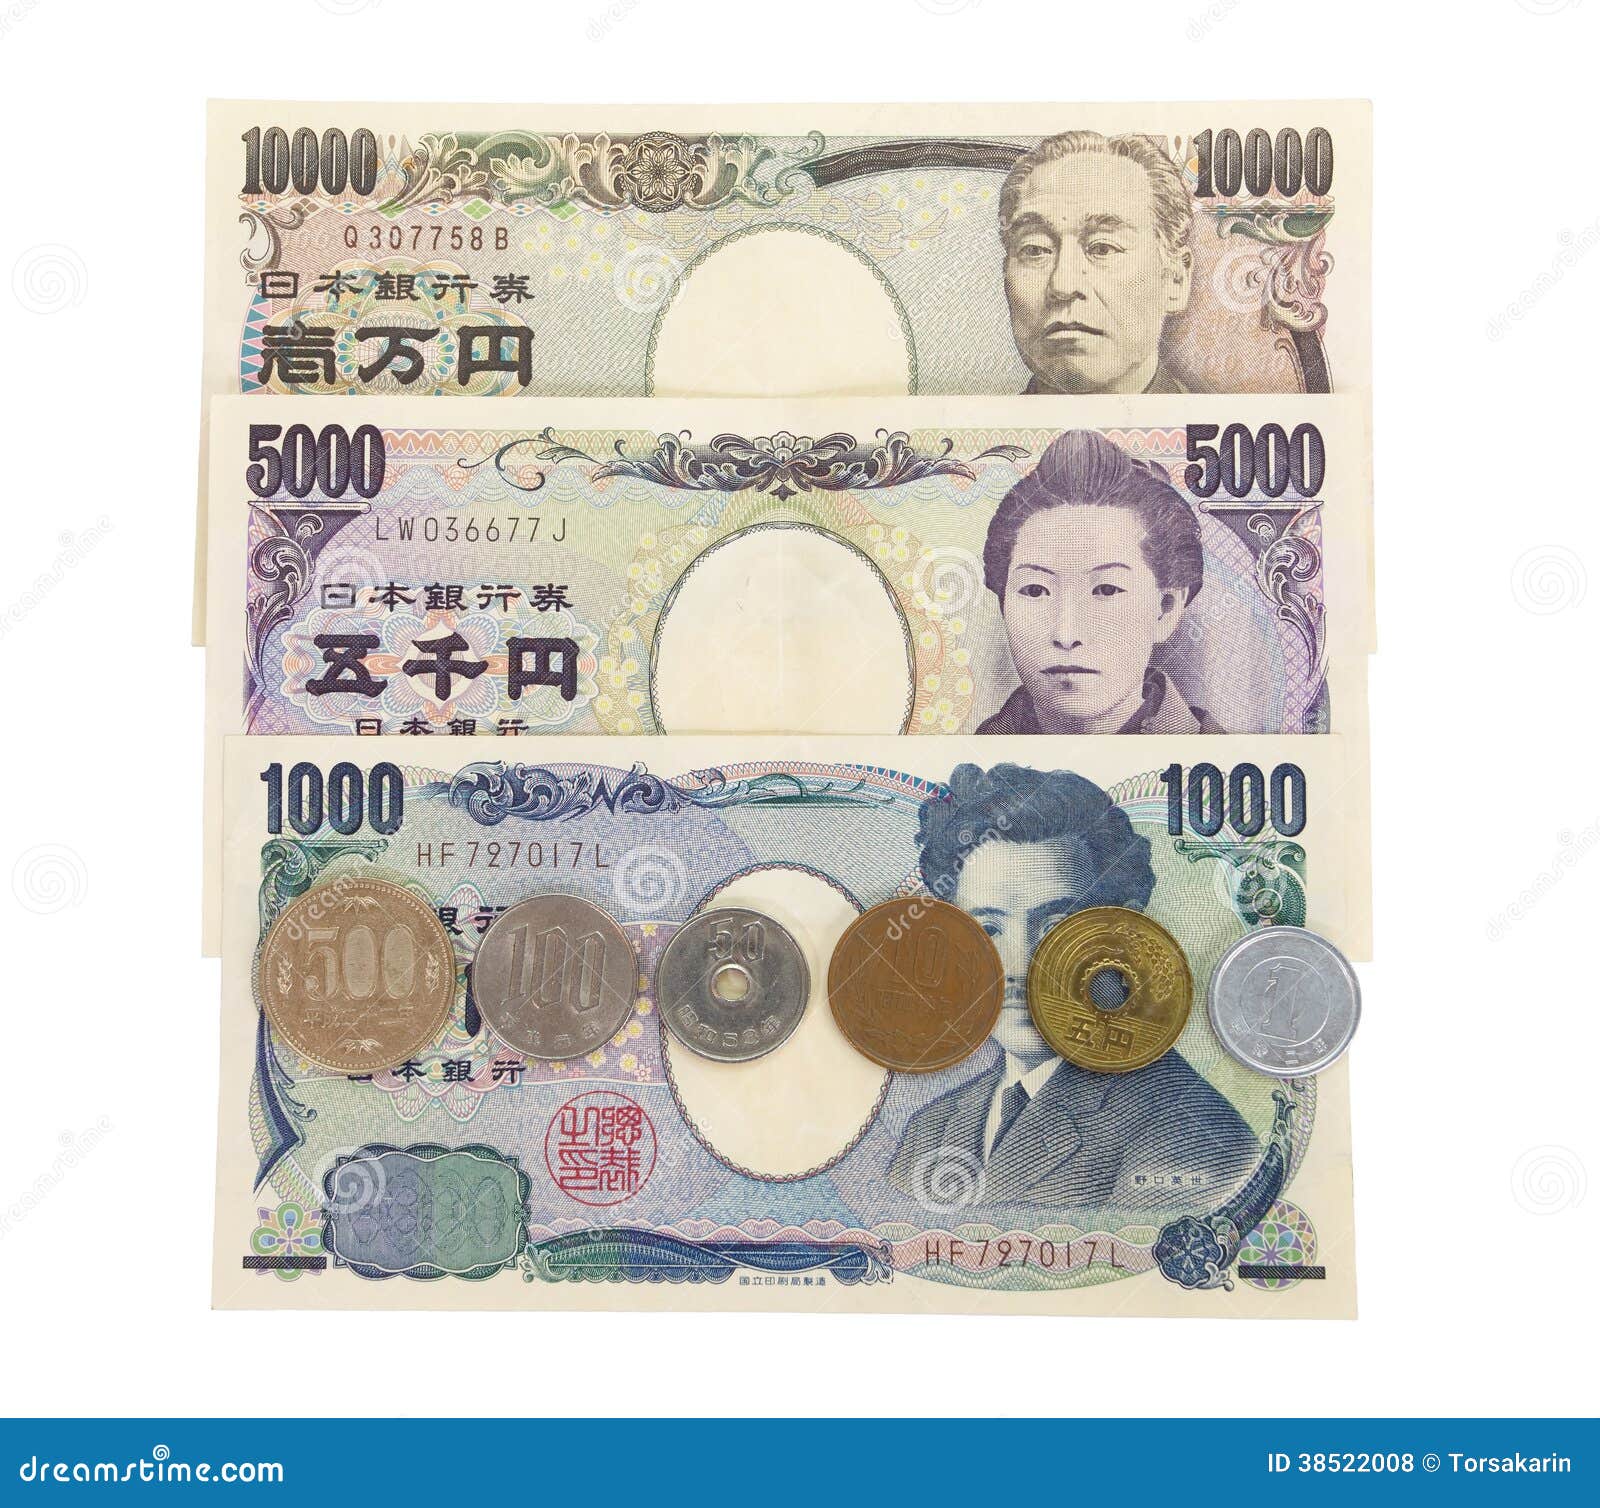 日元 — 日元：一万日元钞票的特写 前视图 模糊背景 库存图片. 图片 包括有 前面, 特写镜头, 班卓琵琶 - 184861771